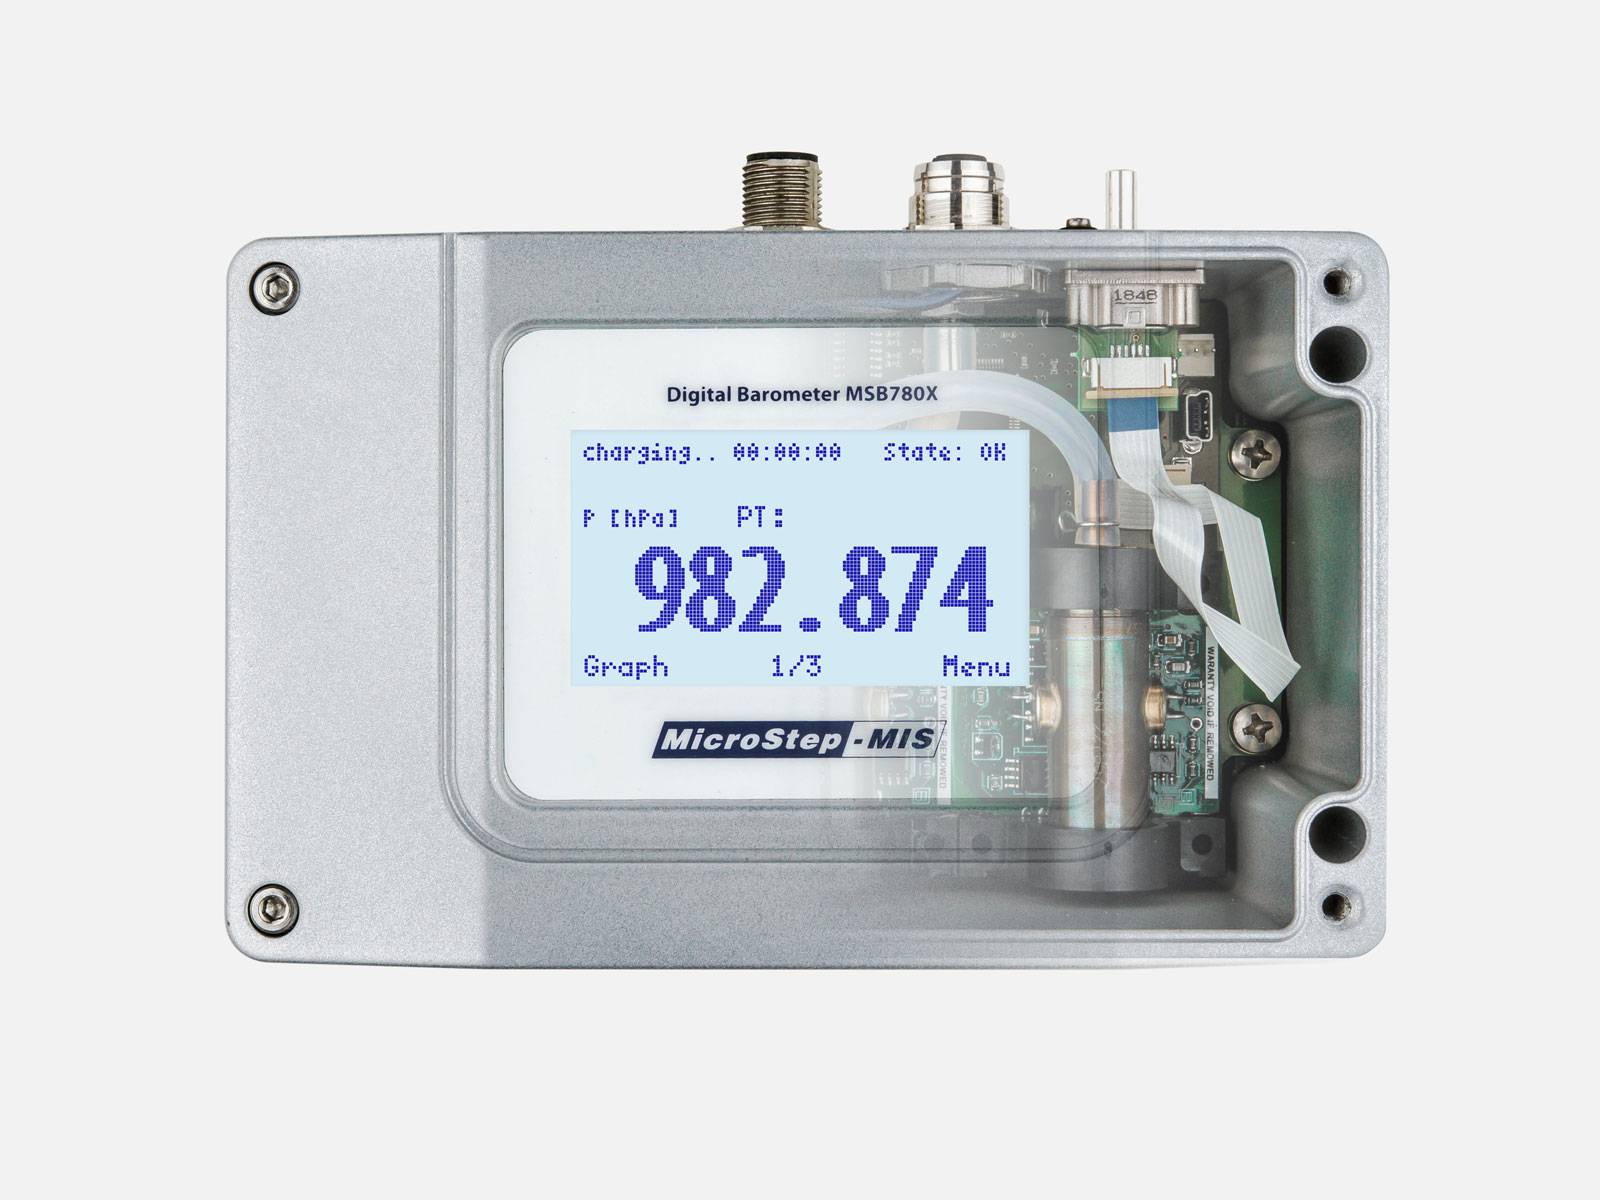 Digital Barometer MSB780X - Biral